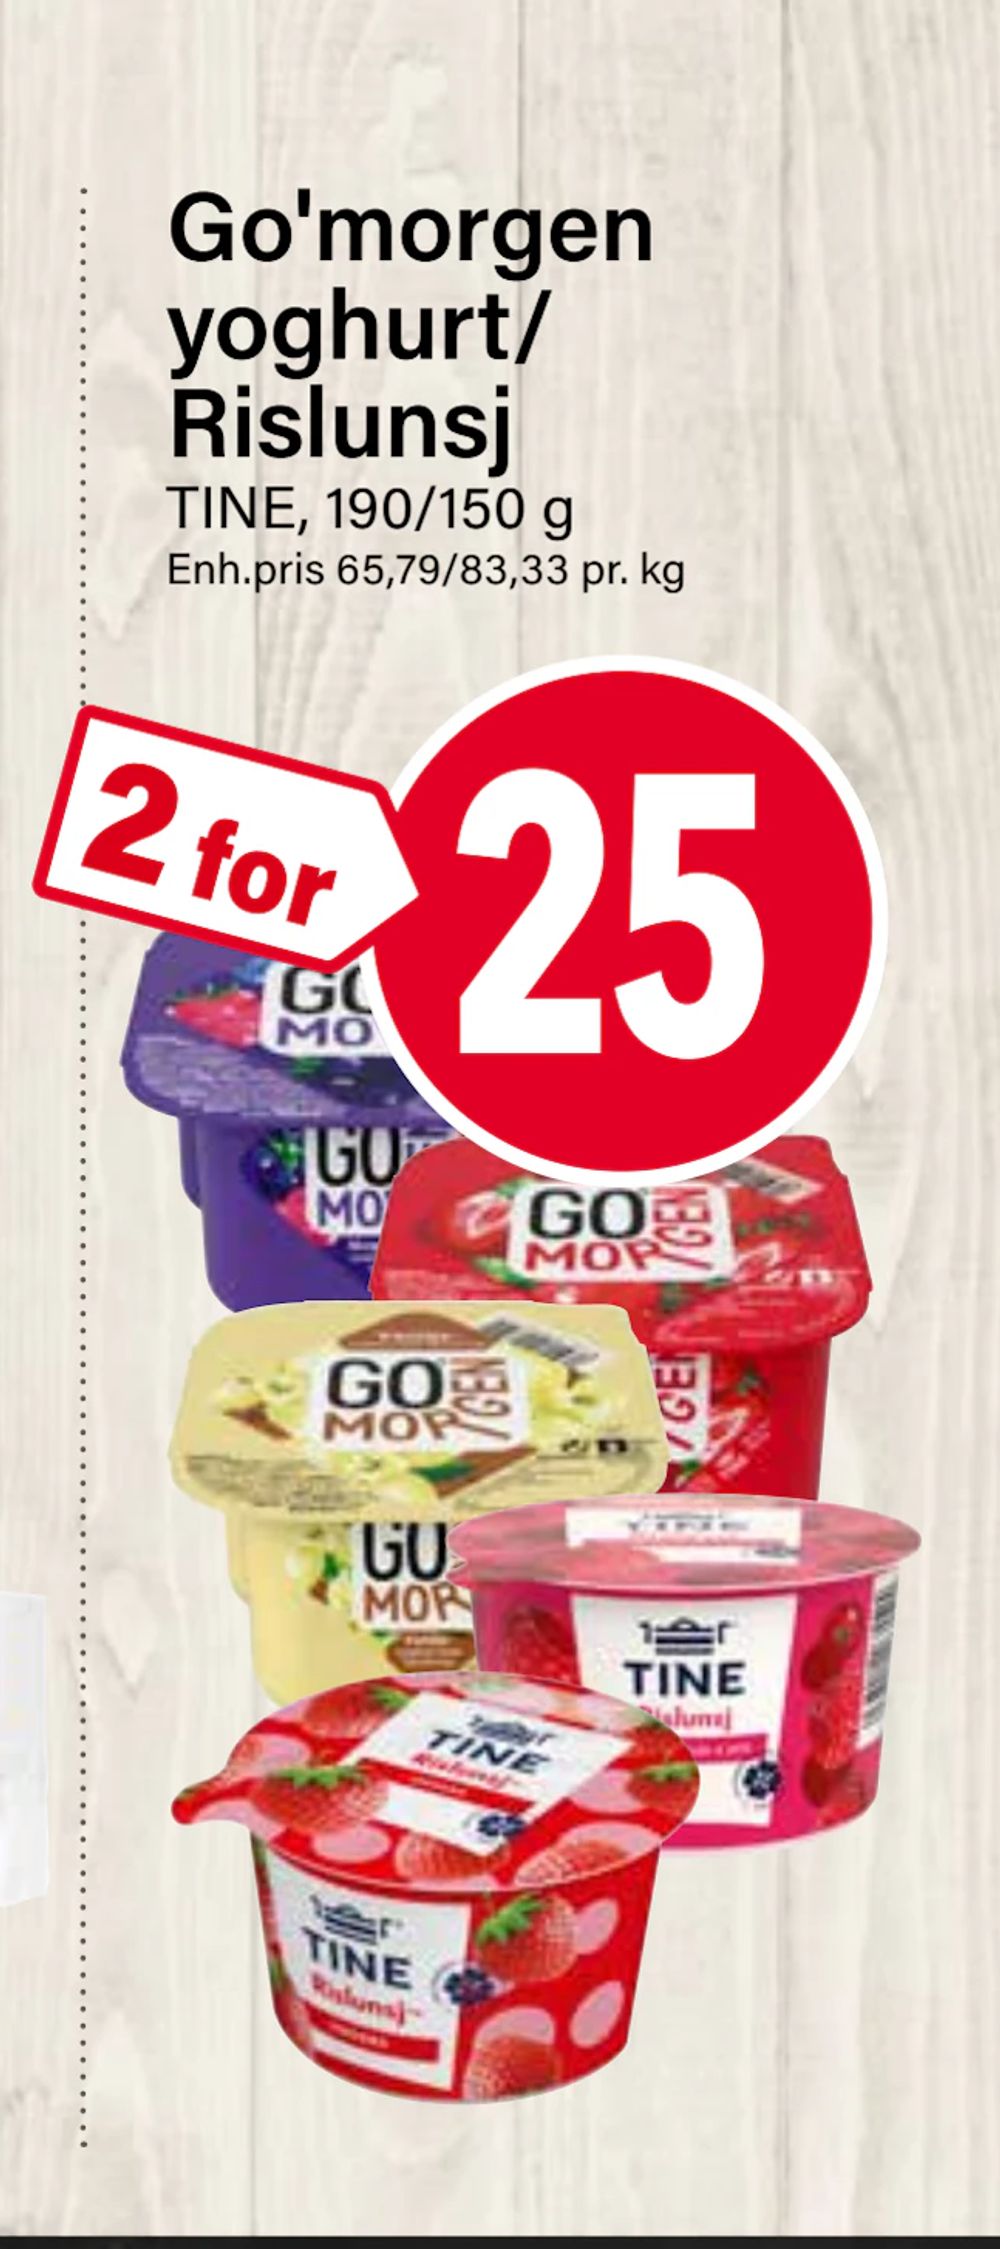 Tilbud på Go'morgen yoghurt/ Rislunsj fra Nærbutikken til 25 kr